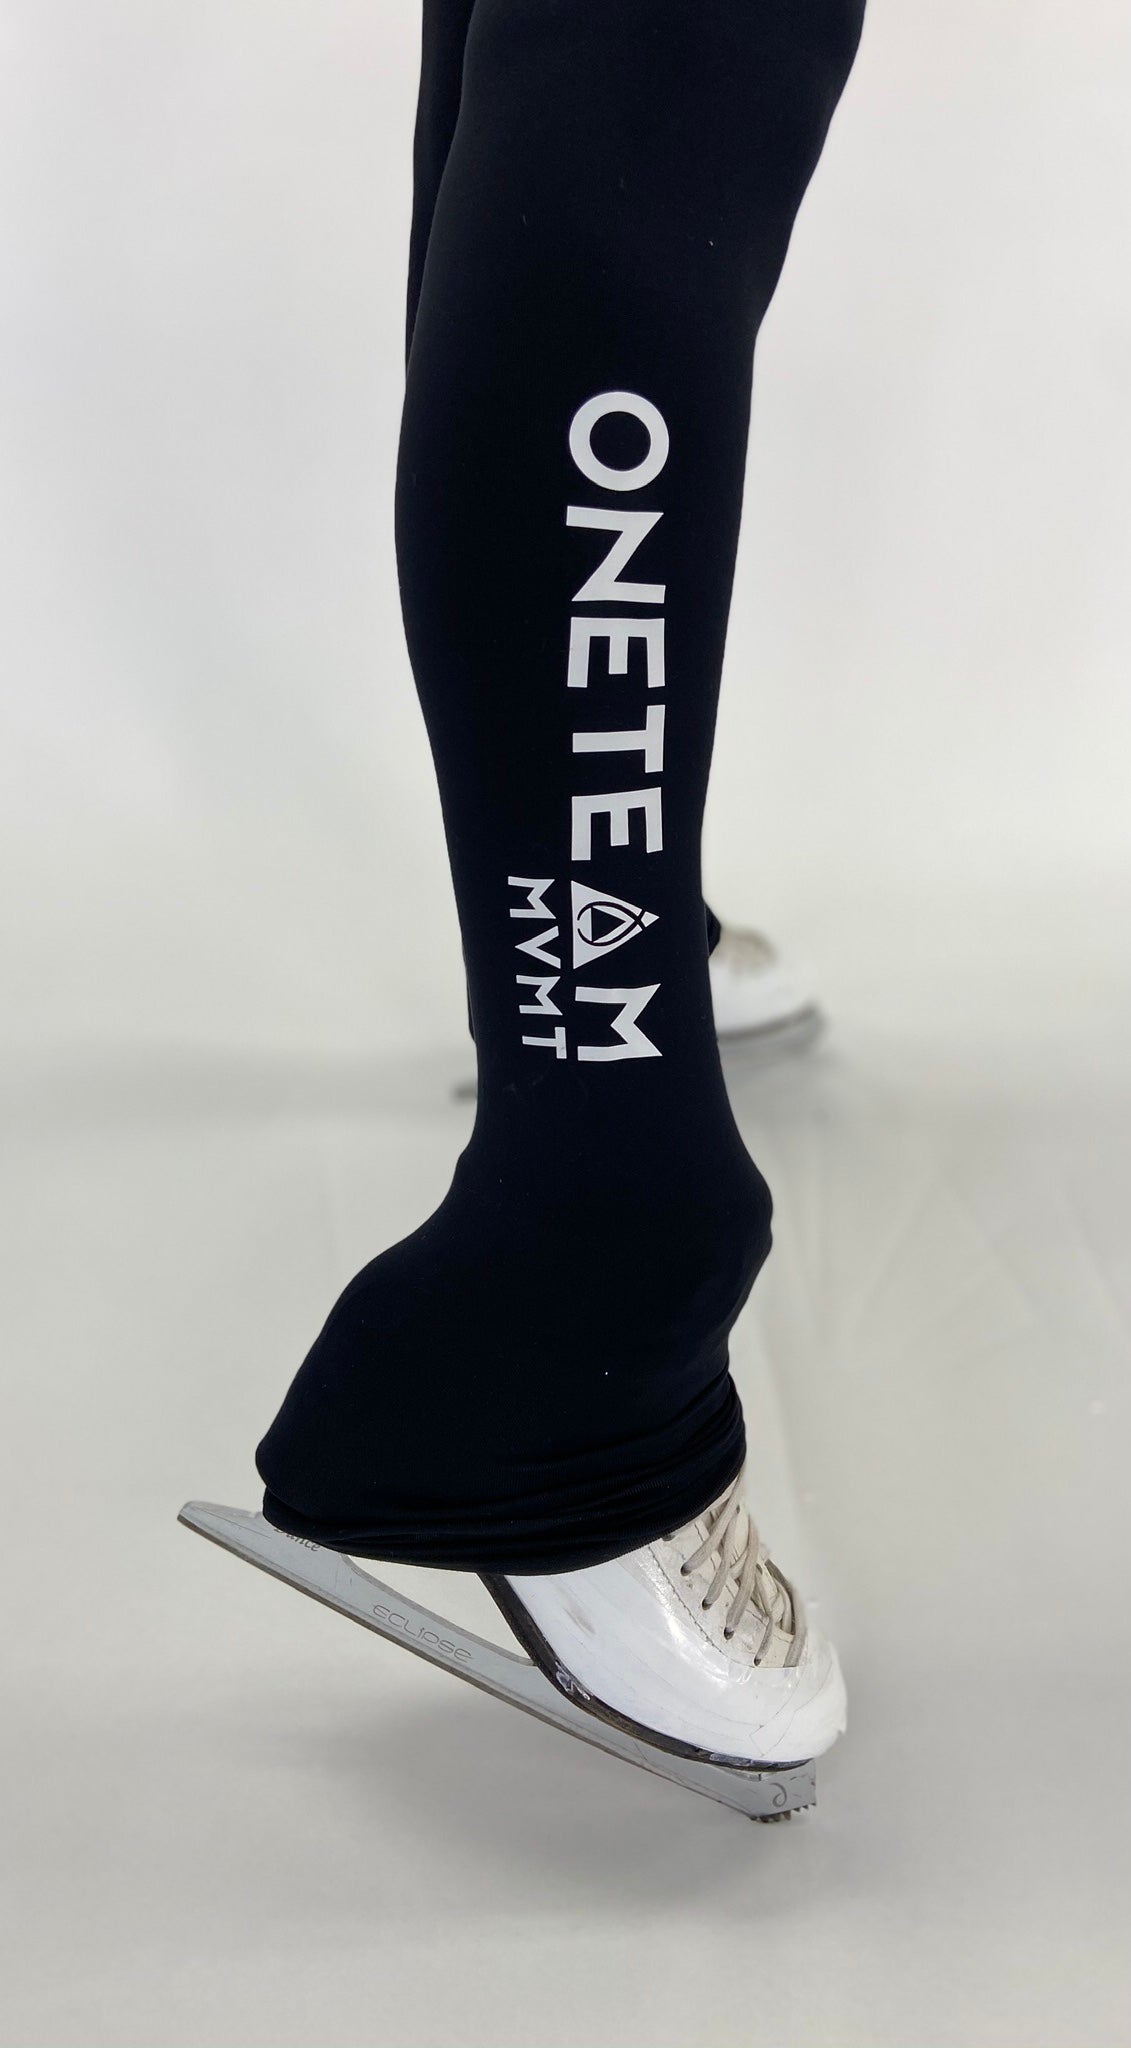 OTM Performance Legging - Basic Black ($CAD) – OneTeamMVMT